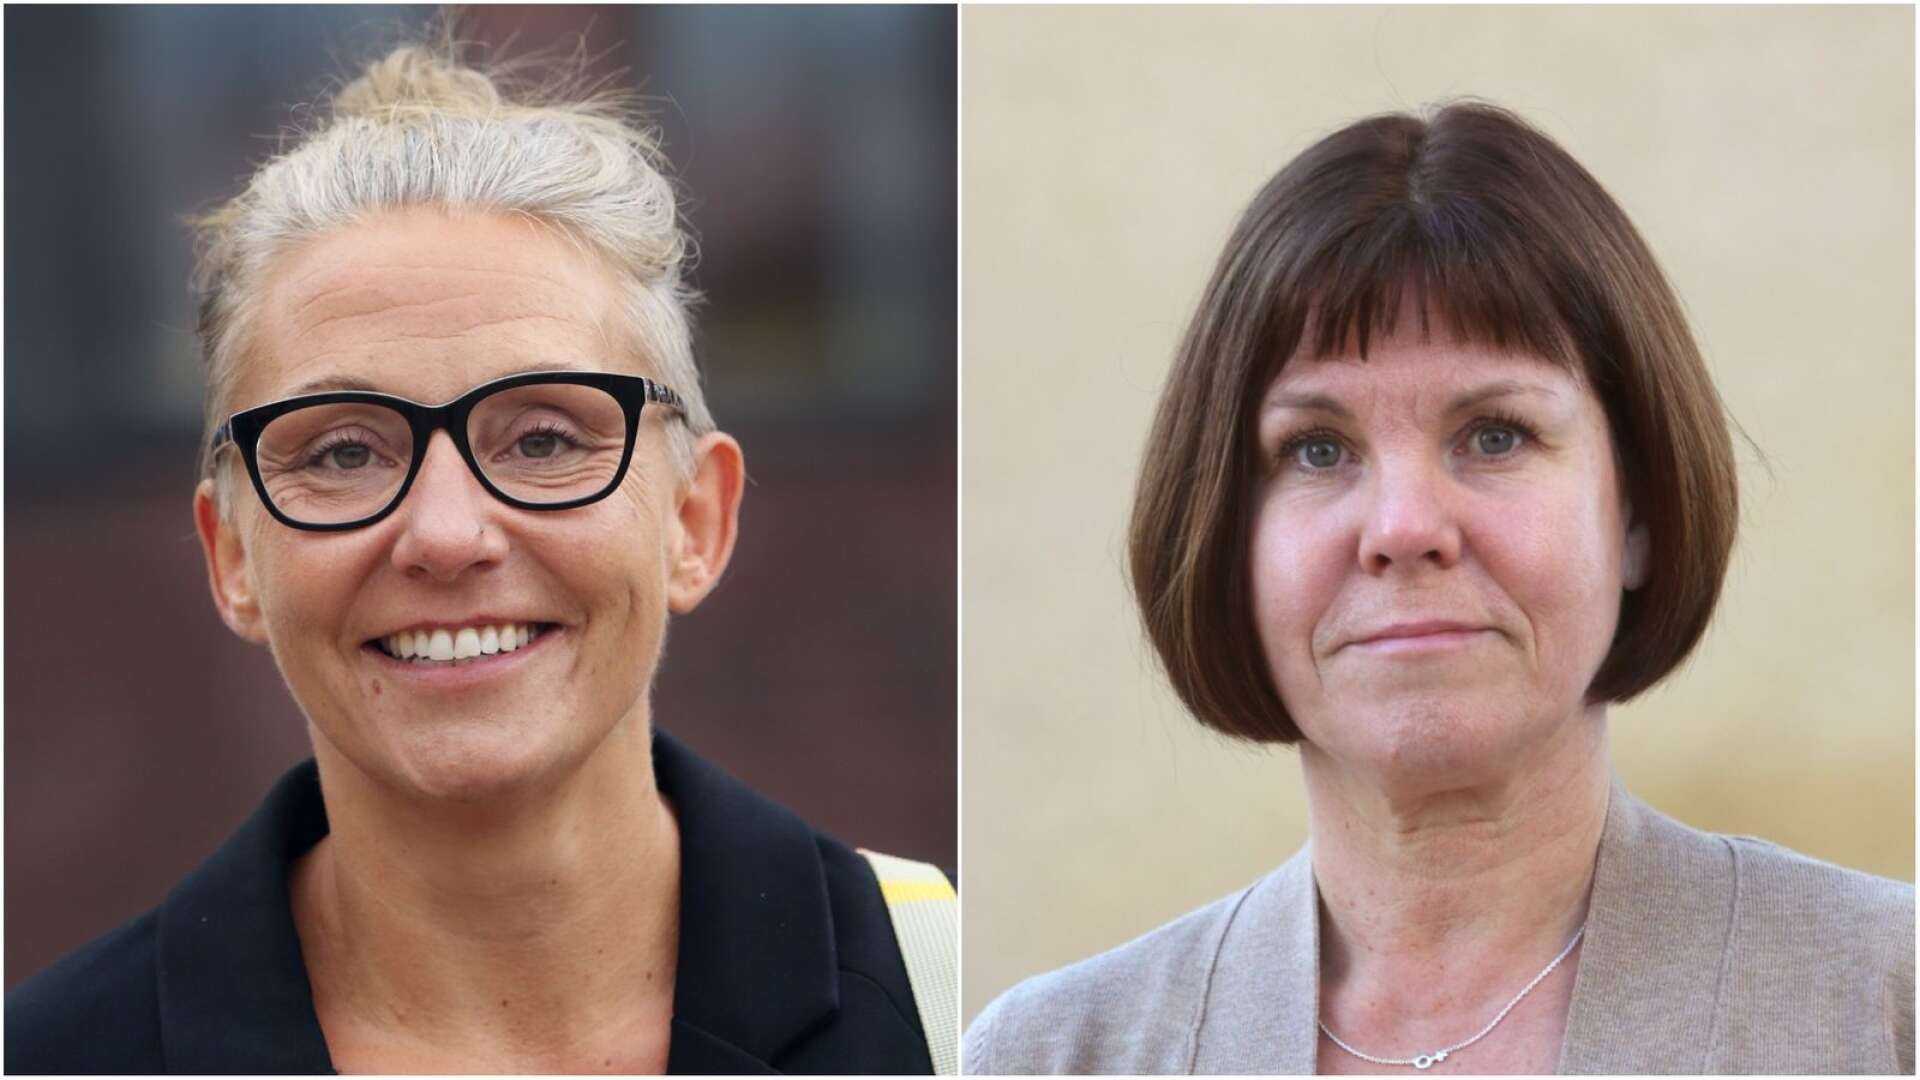 Maria Olausson, Lärarnas riksförbund och Lena Dalstam, fackförbundet Kommunal, sa nej till att anställa Susanne Wirdemo som kommundirektör.